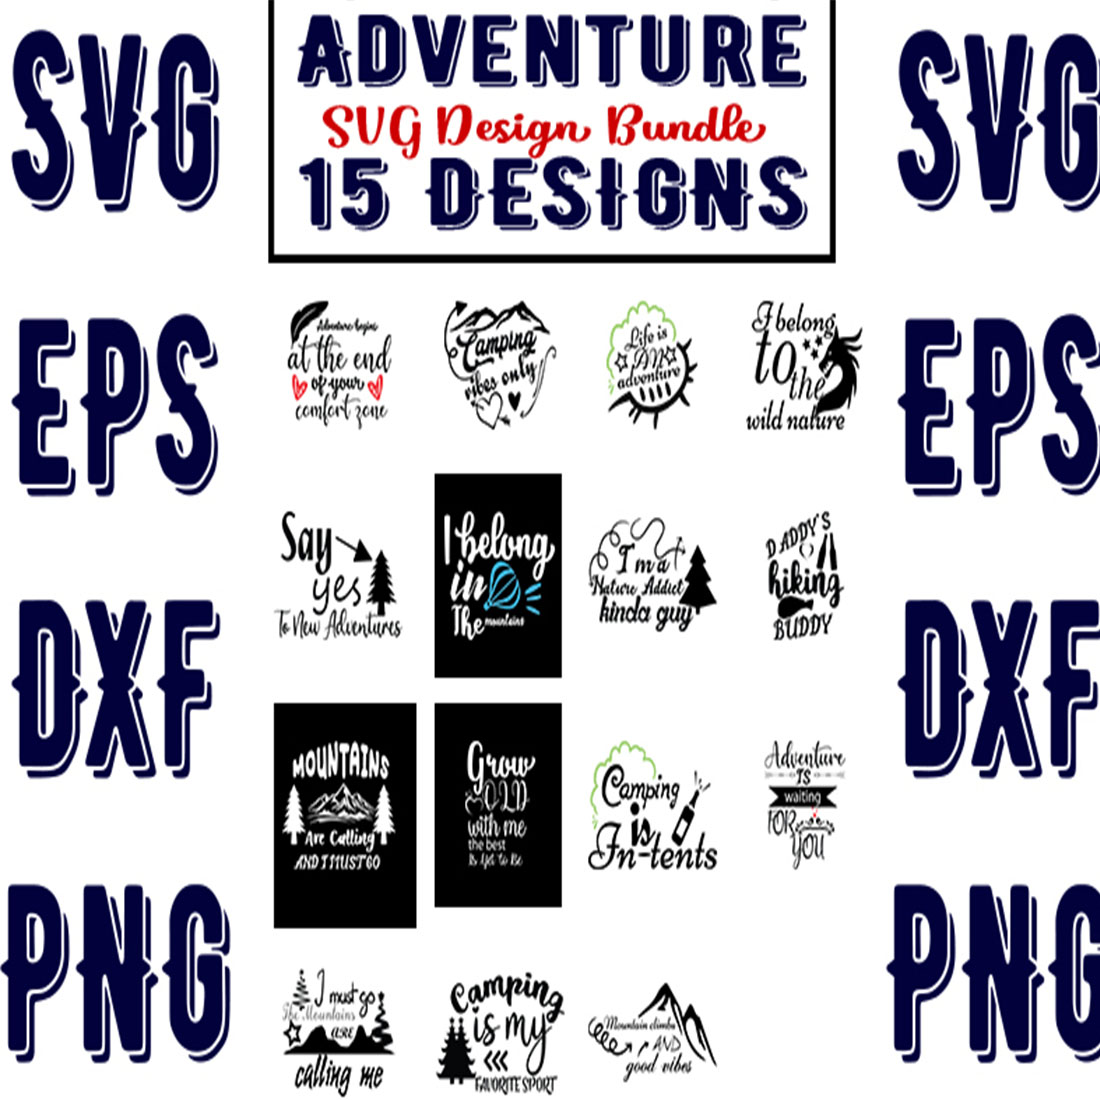 Adventure SVG Bundle preview image.